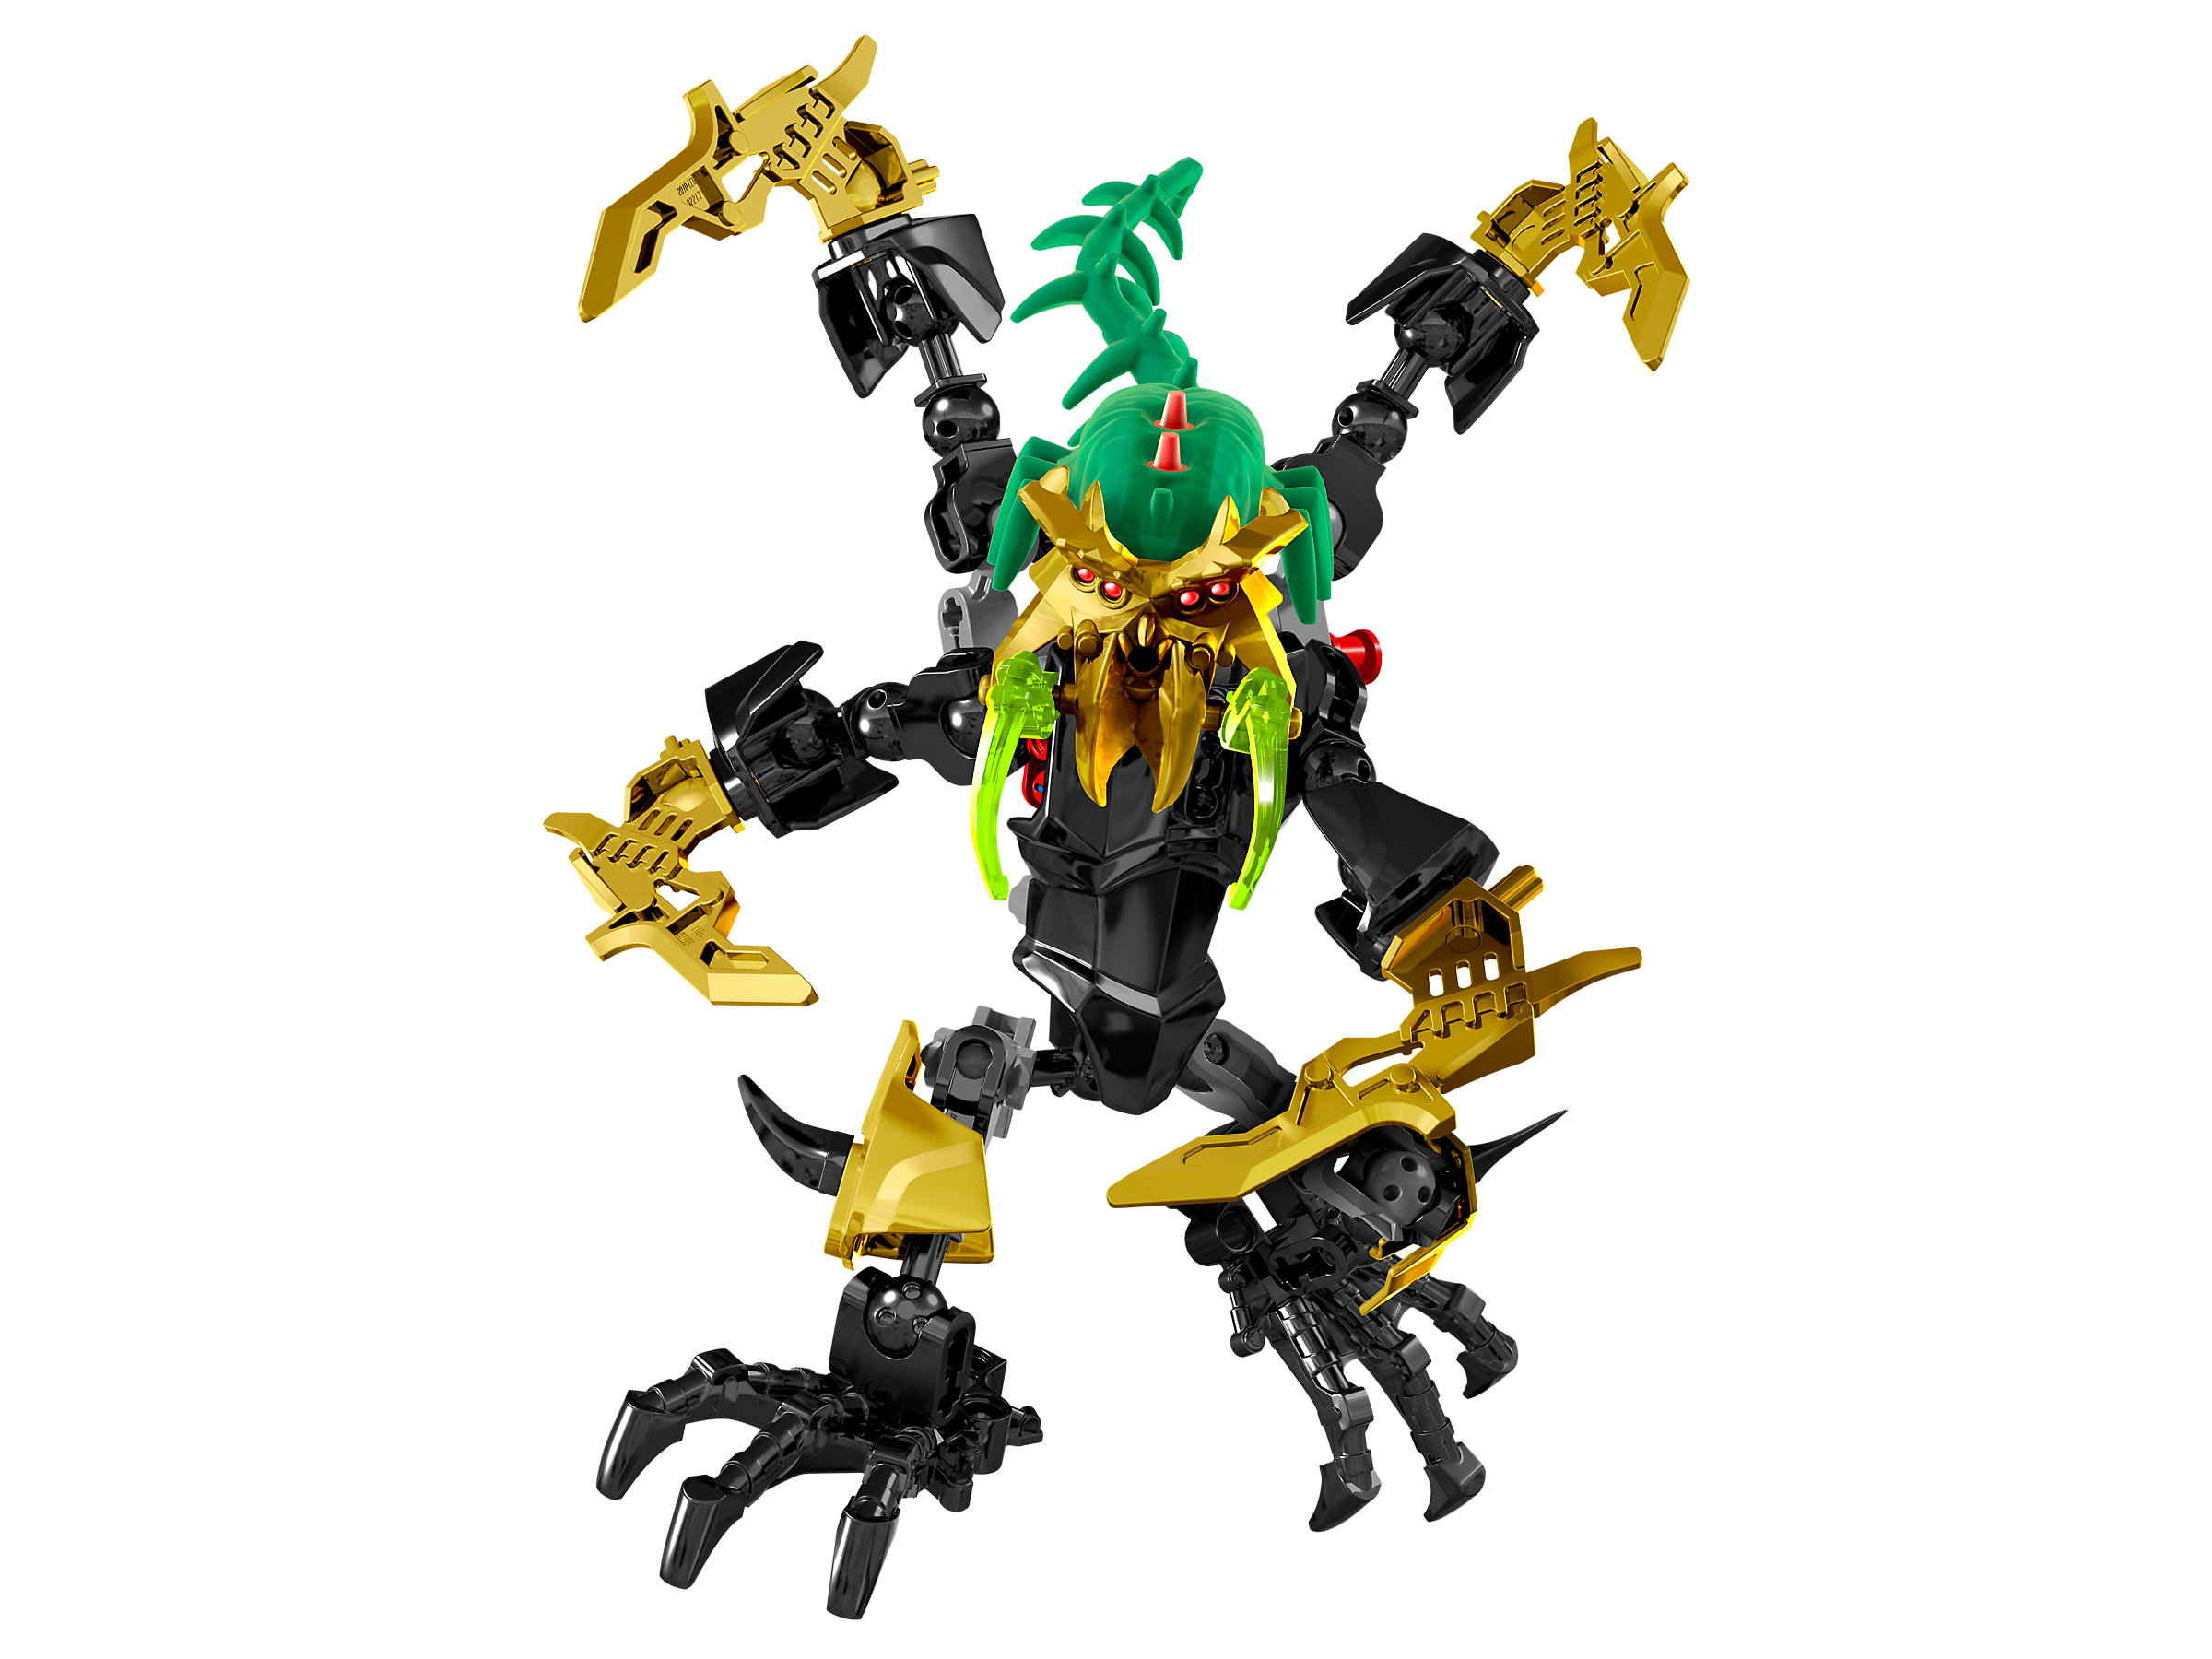 C152 Lego 44001 Hero Factory Villans Pyrox complet à 100 % de 2013 